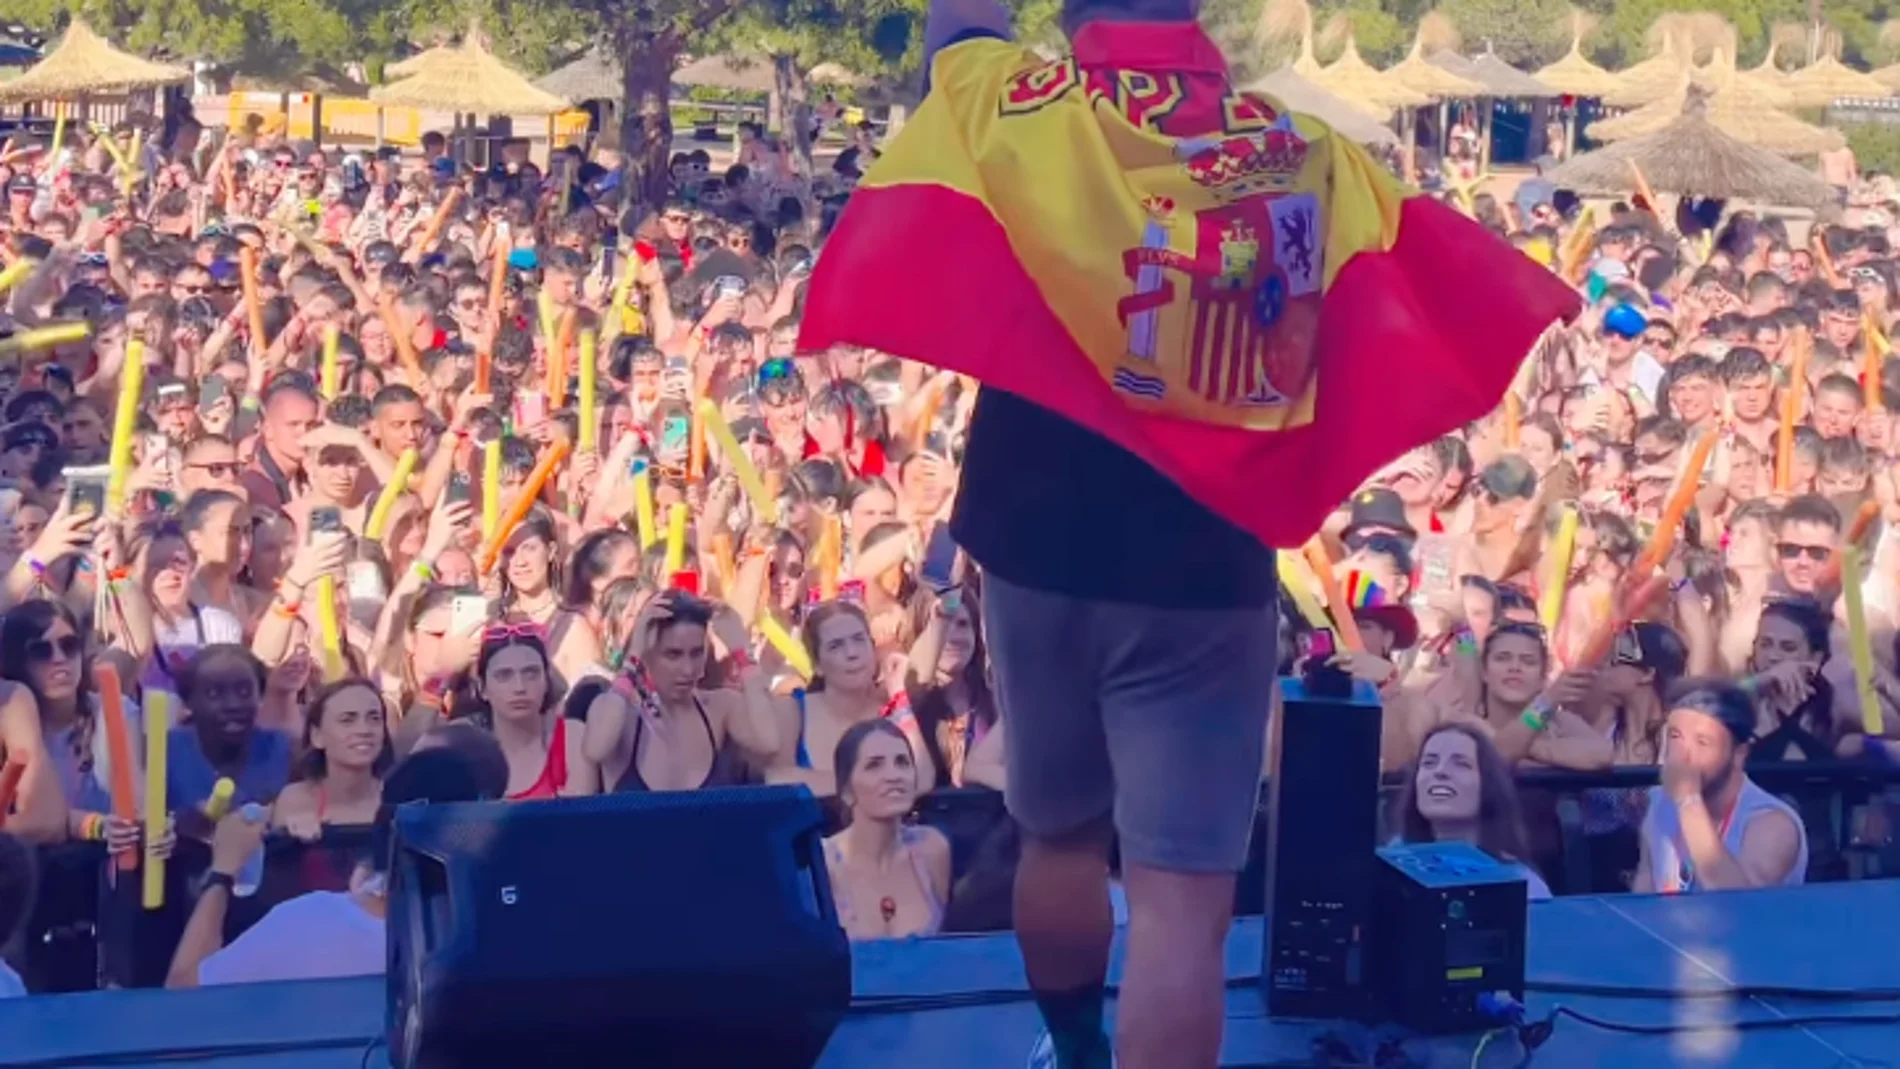 Henry Méndez: "Siéntanse orgullosos de su bandera, no importa que les digan facha. Que nadie les quiera quitar la autoridad de ser españoles, siéntanse españoles. ¡Viva España!"